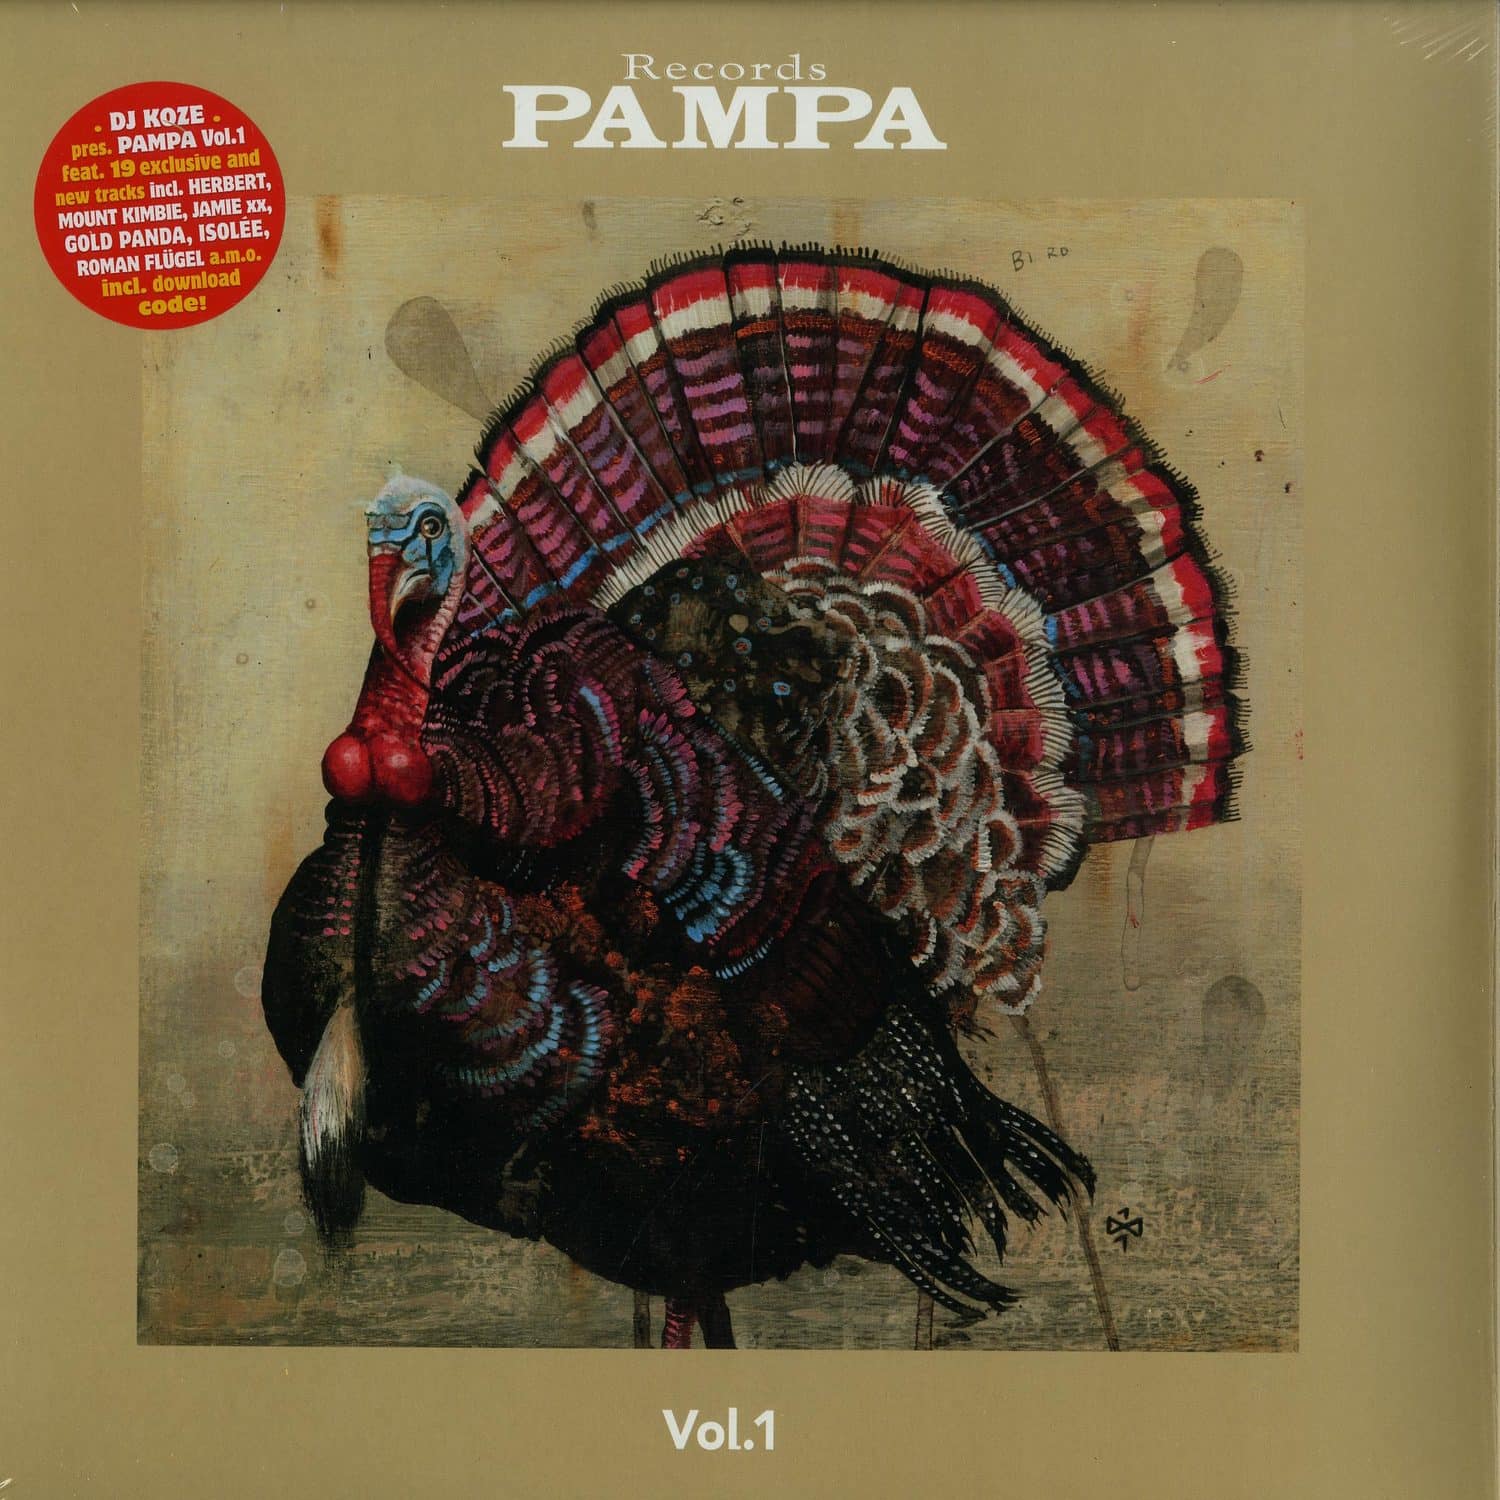 Various Artists - DJ KOZE PRES. PAMPA VOL.1 